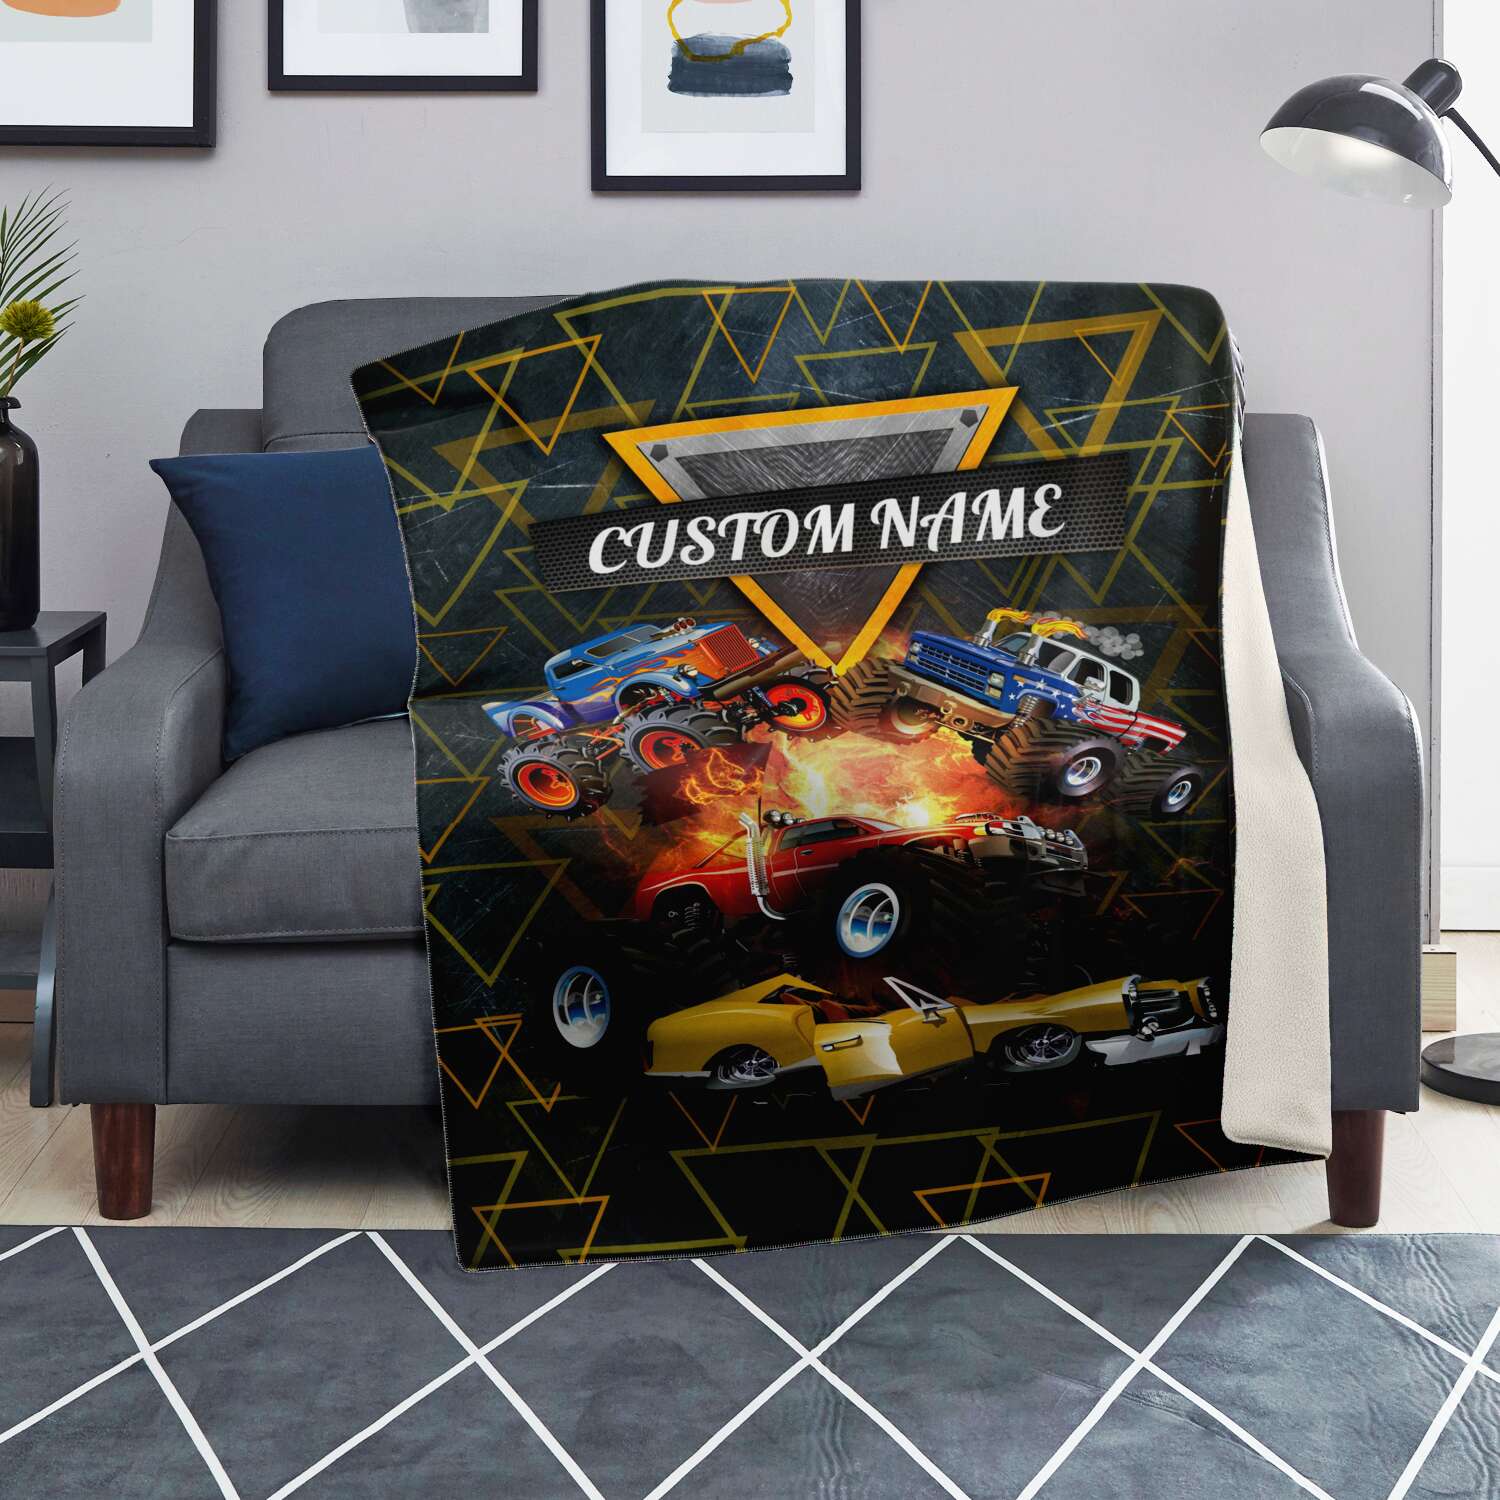 Personalized Name Monster Truck Blanket for Kids, Custom Name Blanket for Boys & Girls